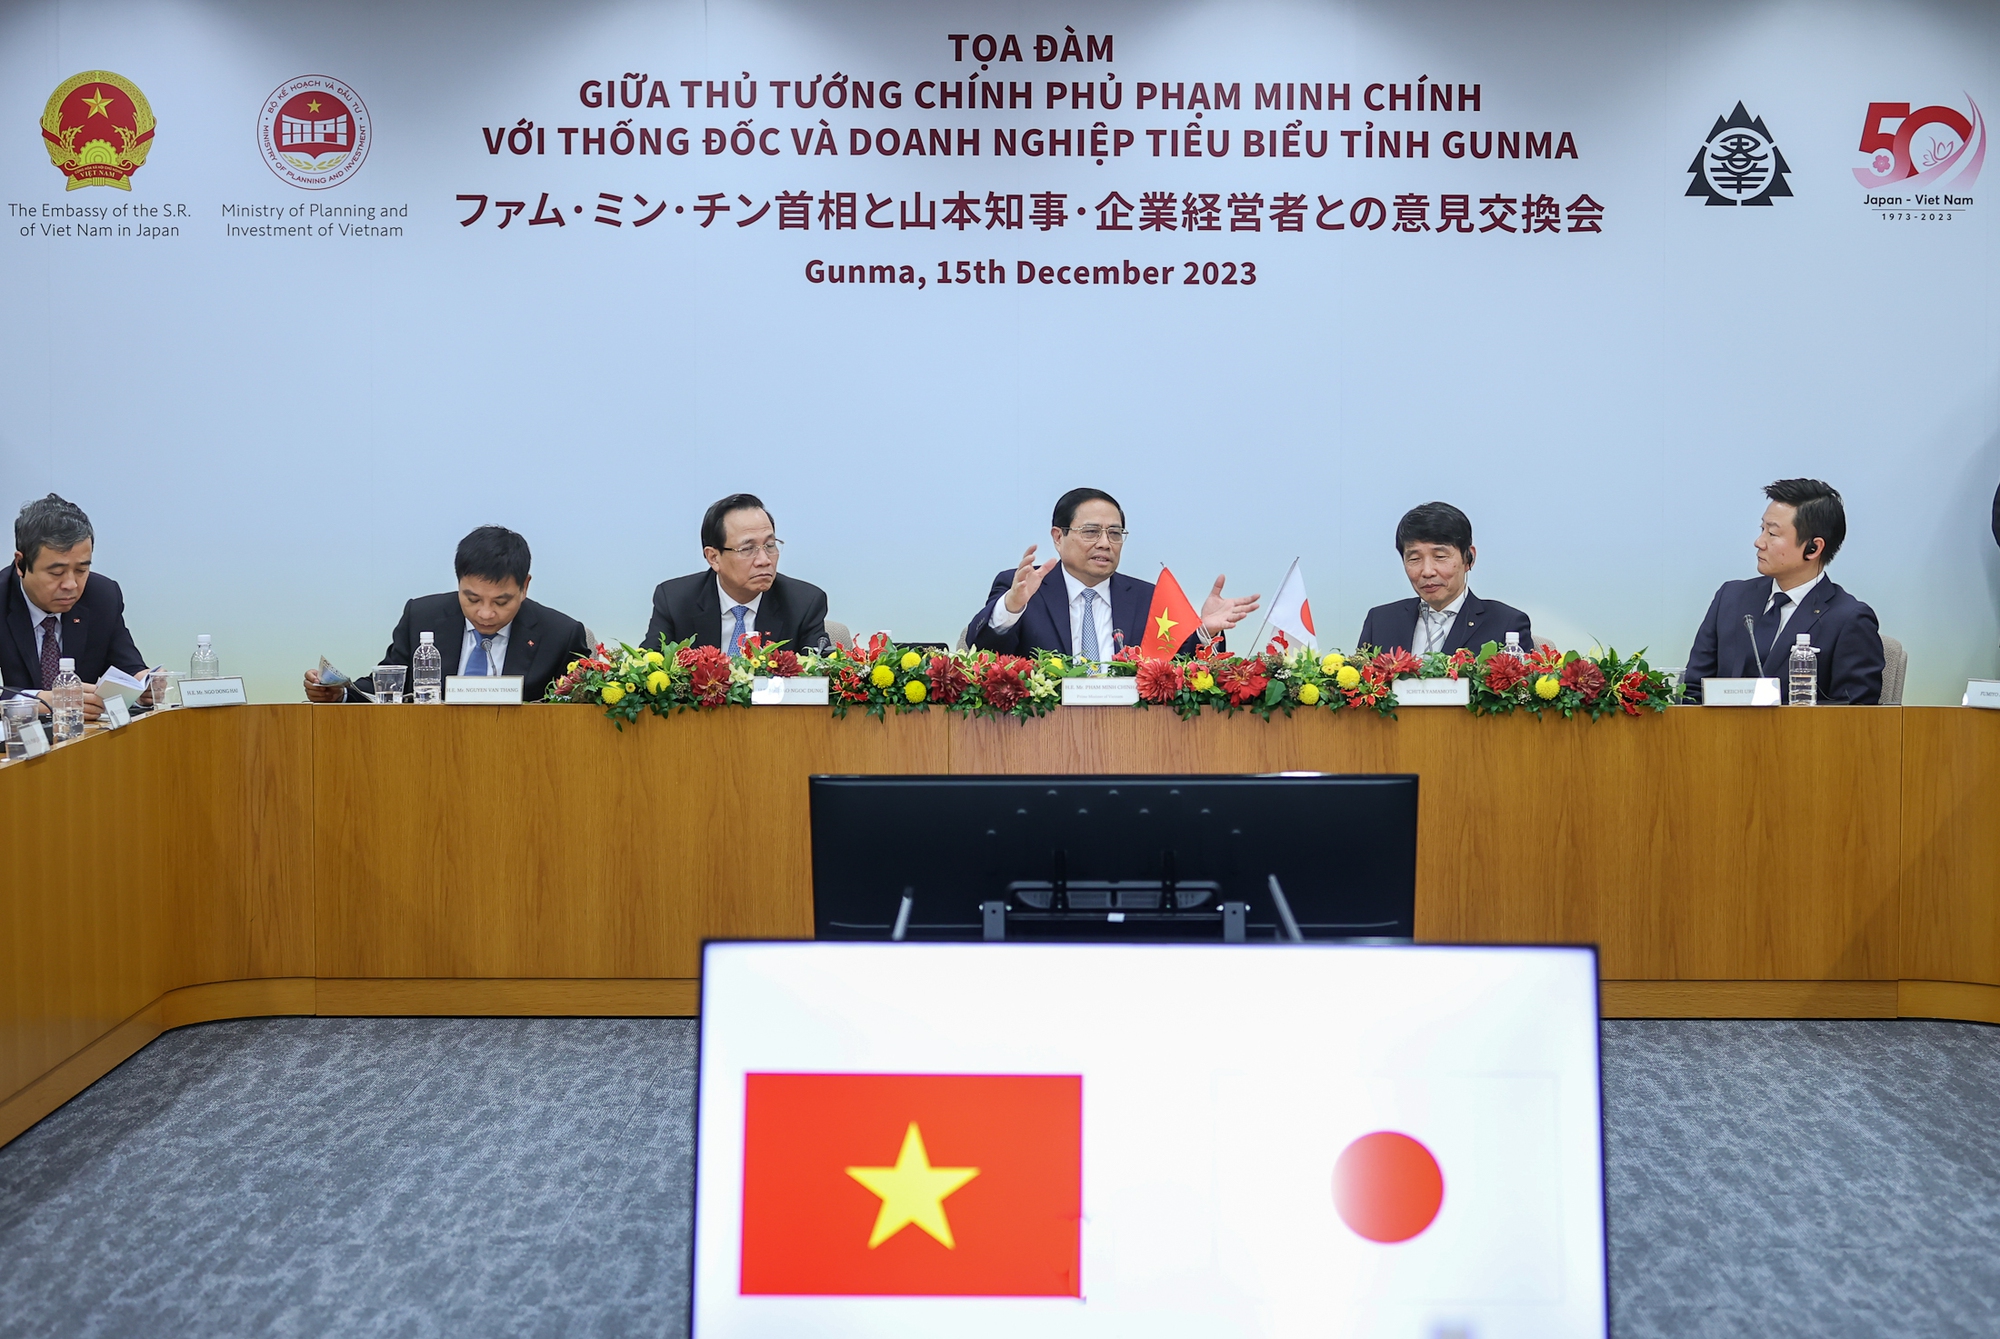 Thủ tướng mong muốn các doanh nghiệp tỉnh Gunma sẽ tiếp tục hỗ trợ, đồng hành cùng Chính phủ và các doanh nghiệp Việt Nam mở rộng hoạt động hợp tác đầu tư - Ảnh: VGP/Nhật Bắc